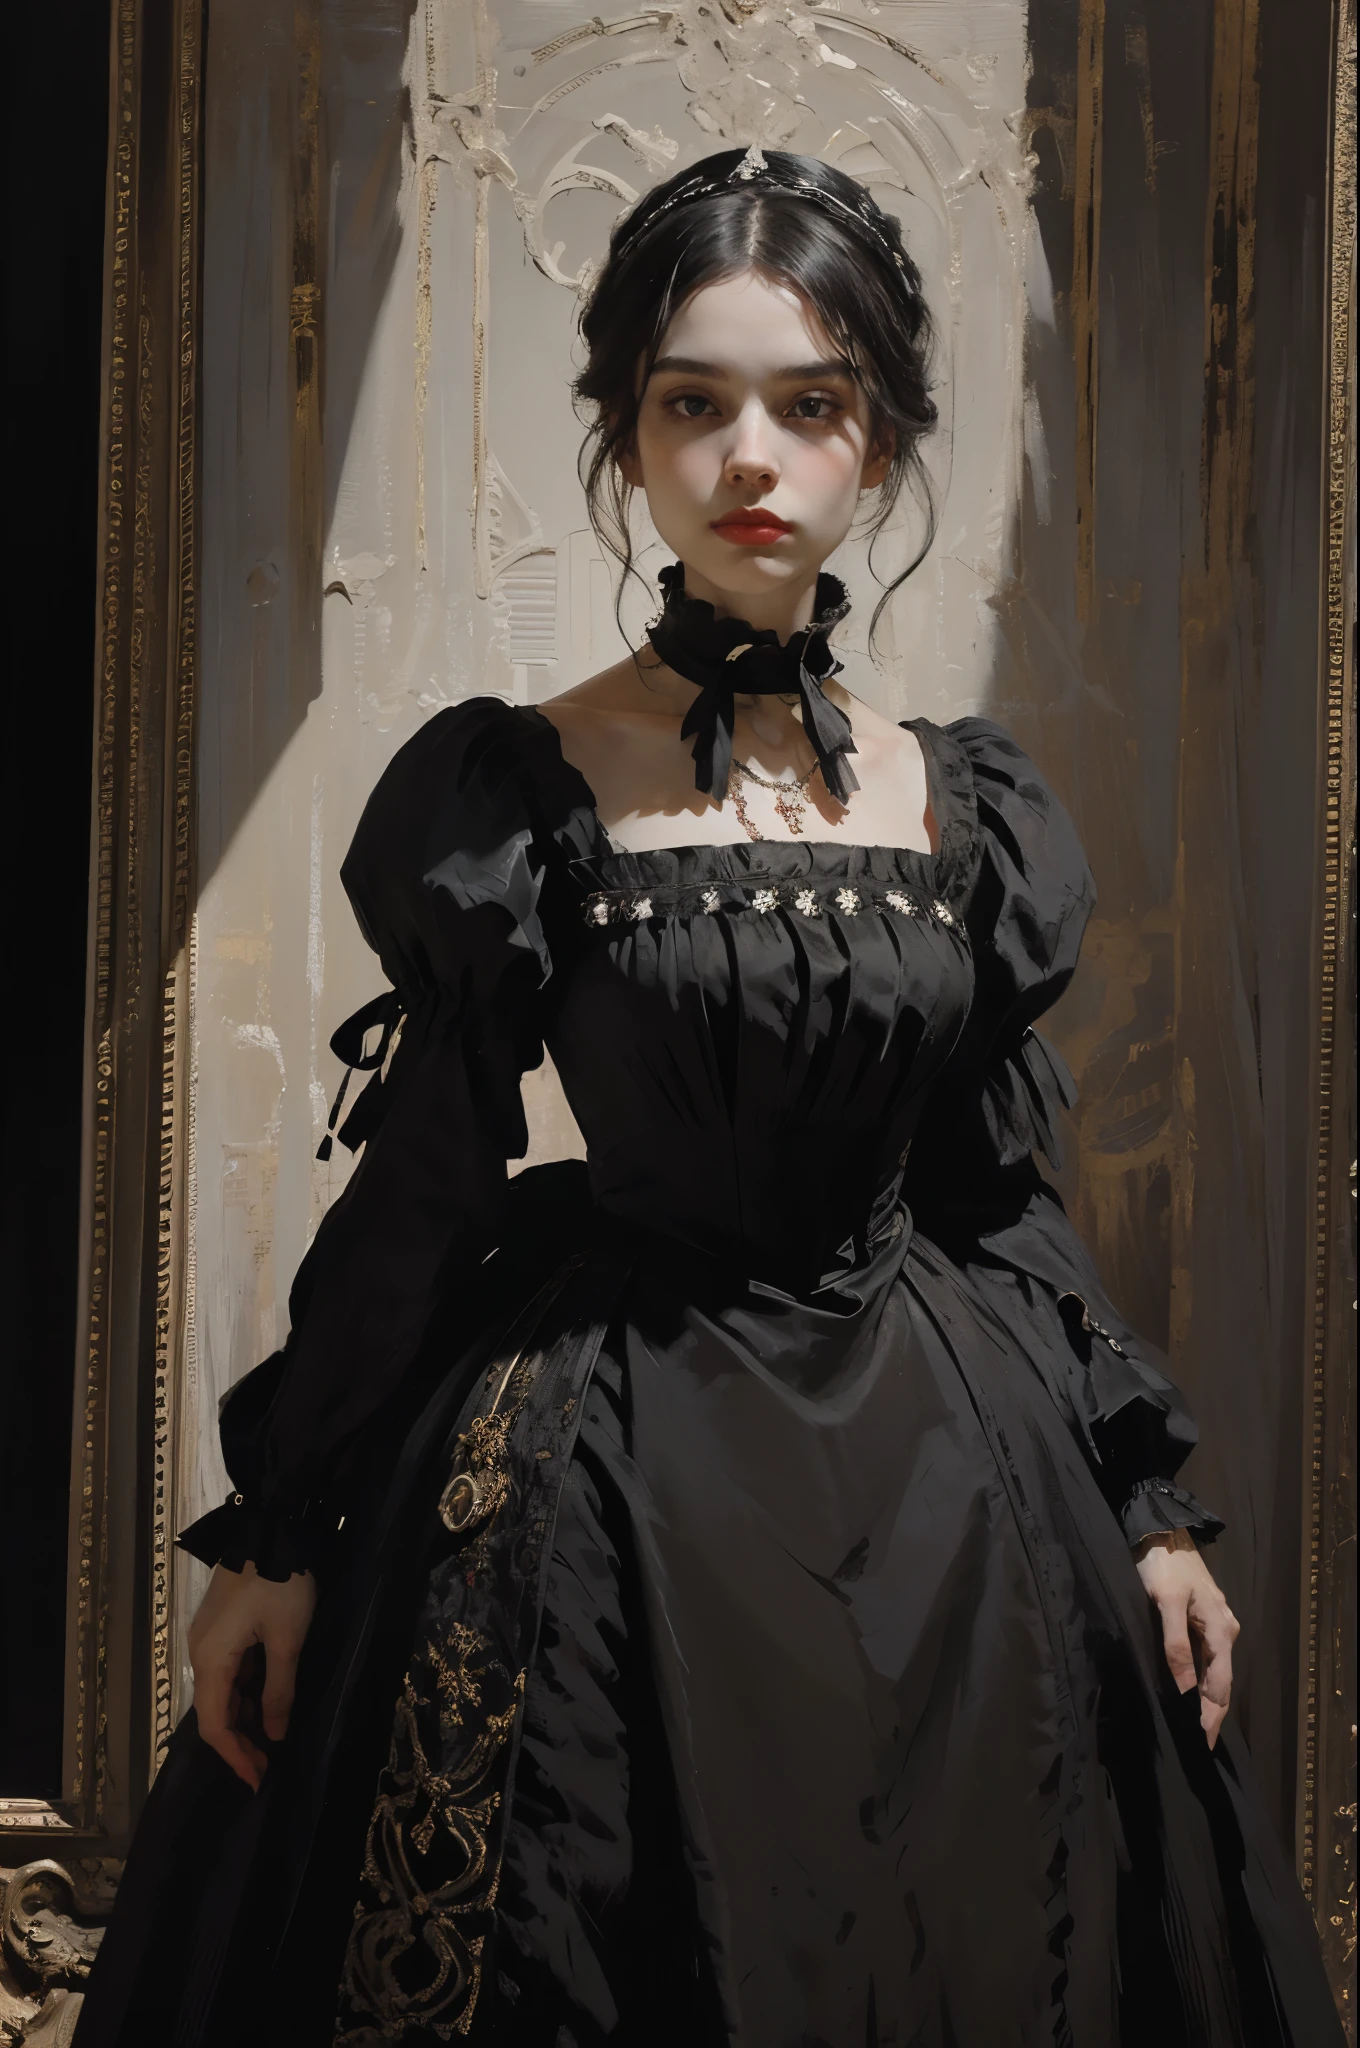 古典絵画, ((肖像画: 1.3)), 黒いドレスを着た女の子, ビクトリア朝様式のフォーマルドレス, (ビクトリア朝のイブニングドレス: 1.3), このドレスはスタンドカラーである, 25歳の若い女の子, 青白い肌, 細い, アクセントカラー付きのモノクロ画像, レッドルビーネックレス,
